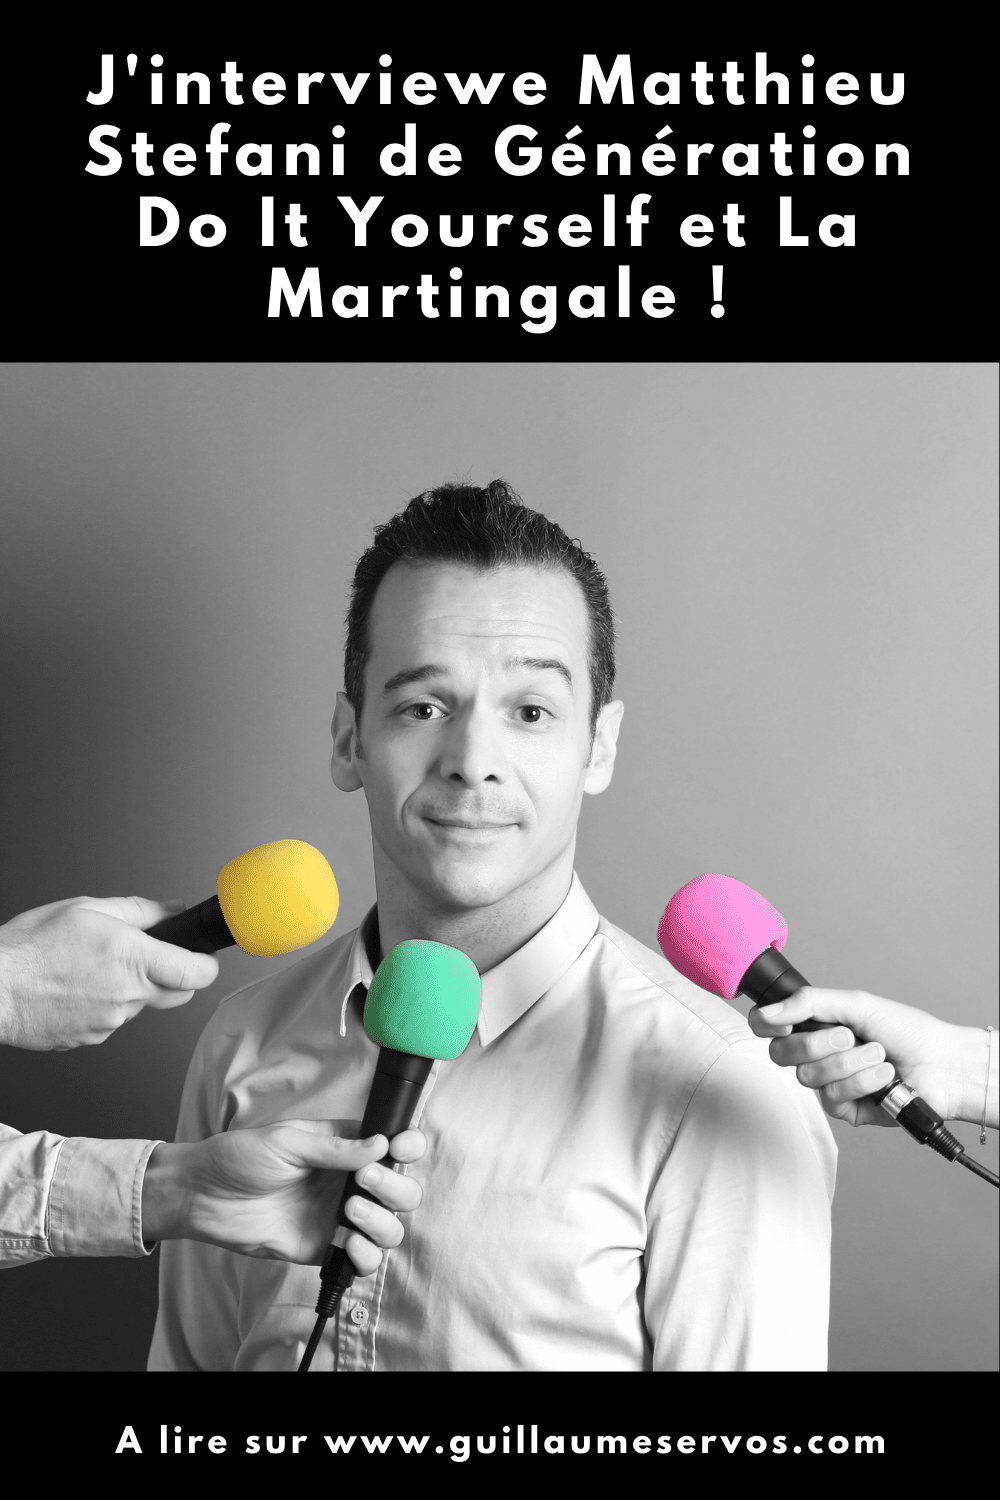 Découvre mon interview avec Matthieu Stefani de Génération Do It Yourself et La Martingale. Son rapport au podcast, aux réseaux sociaux et au voyage.